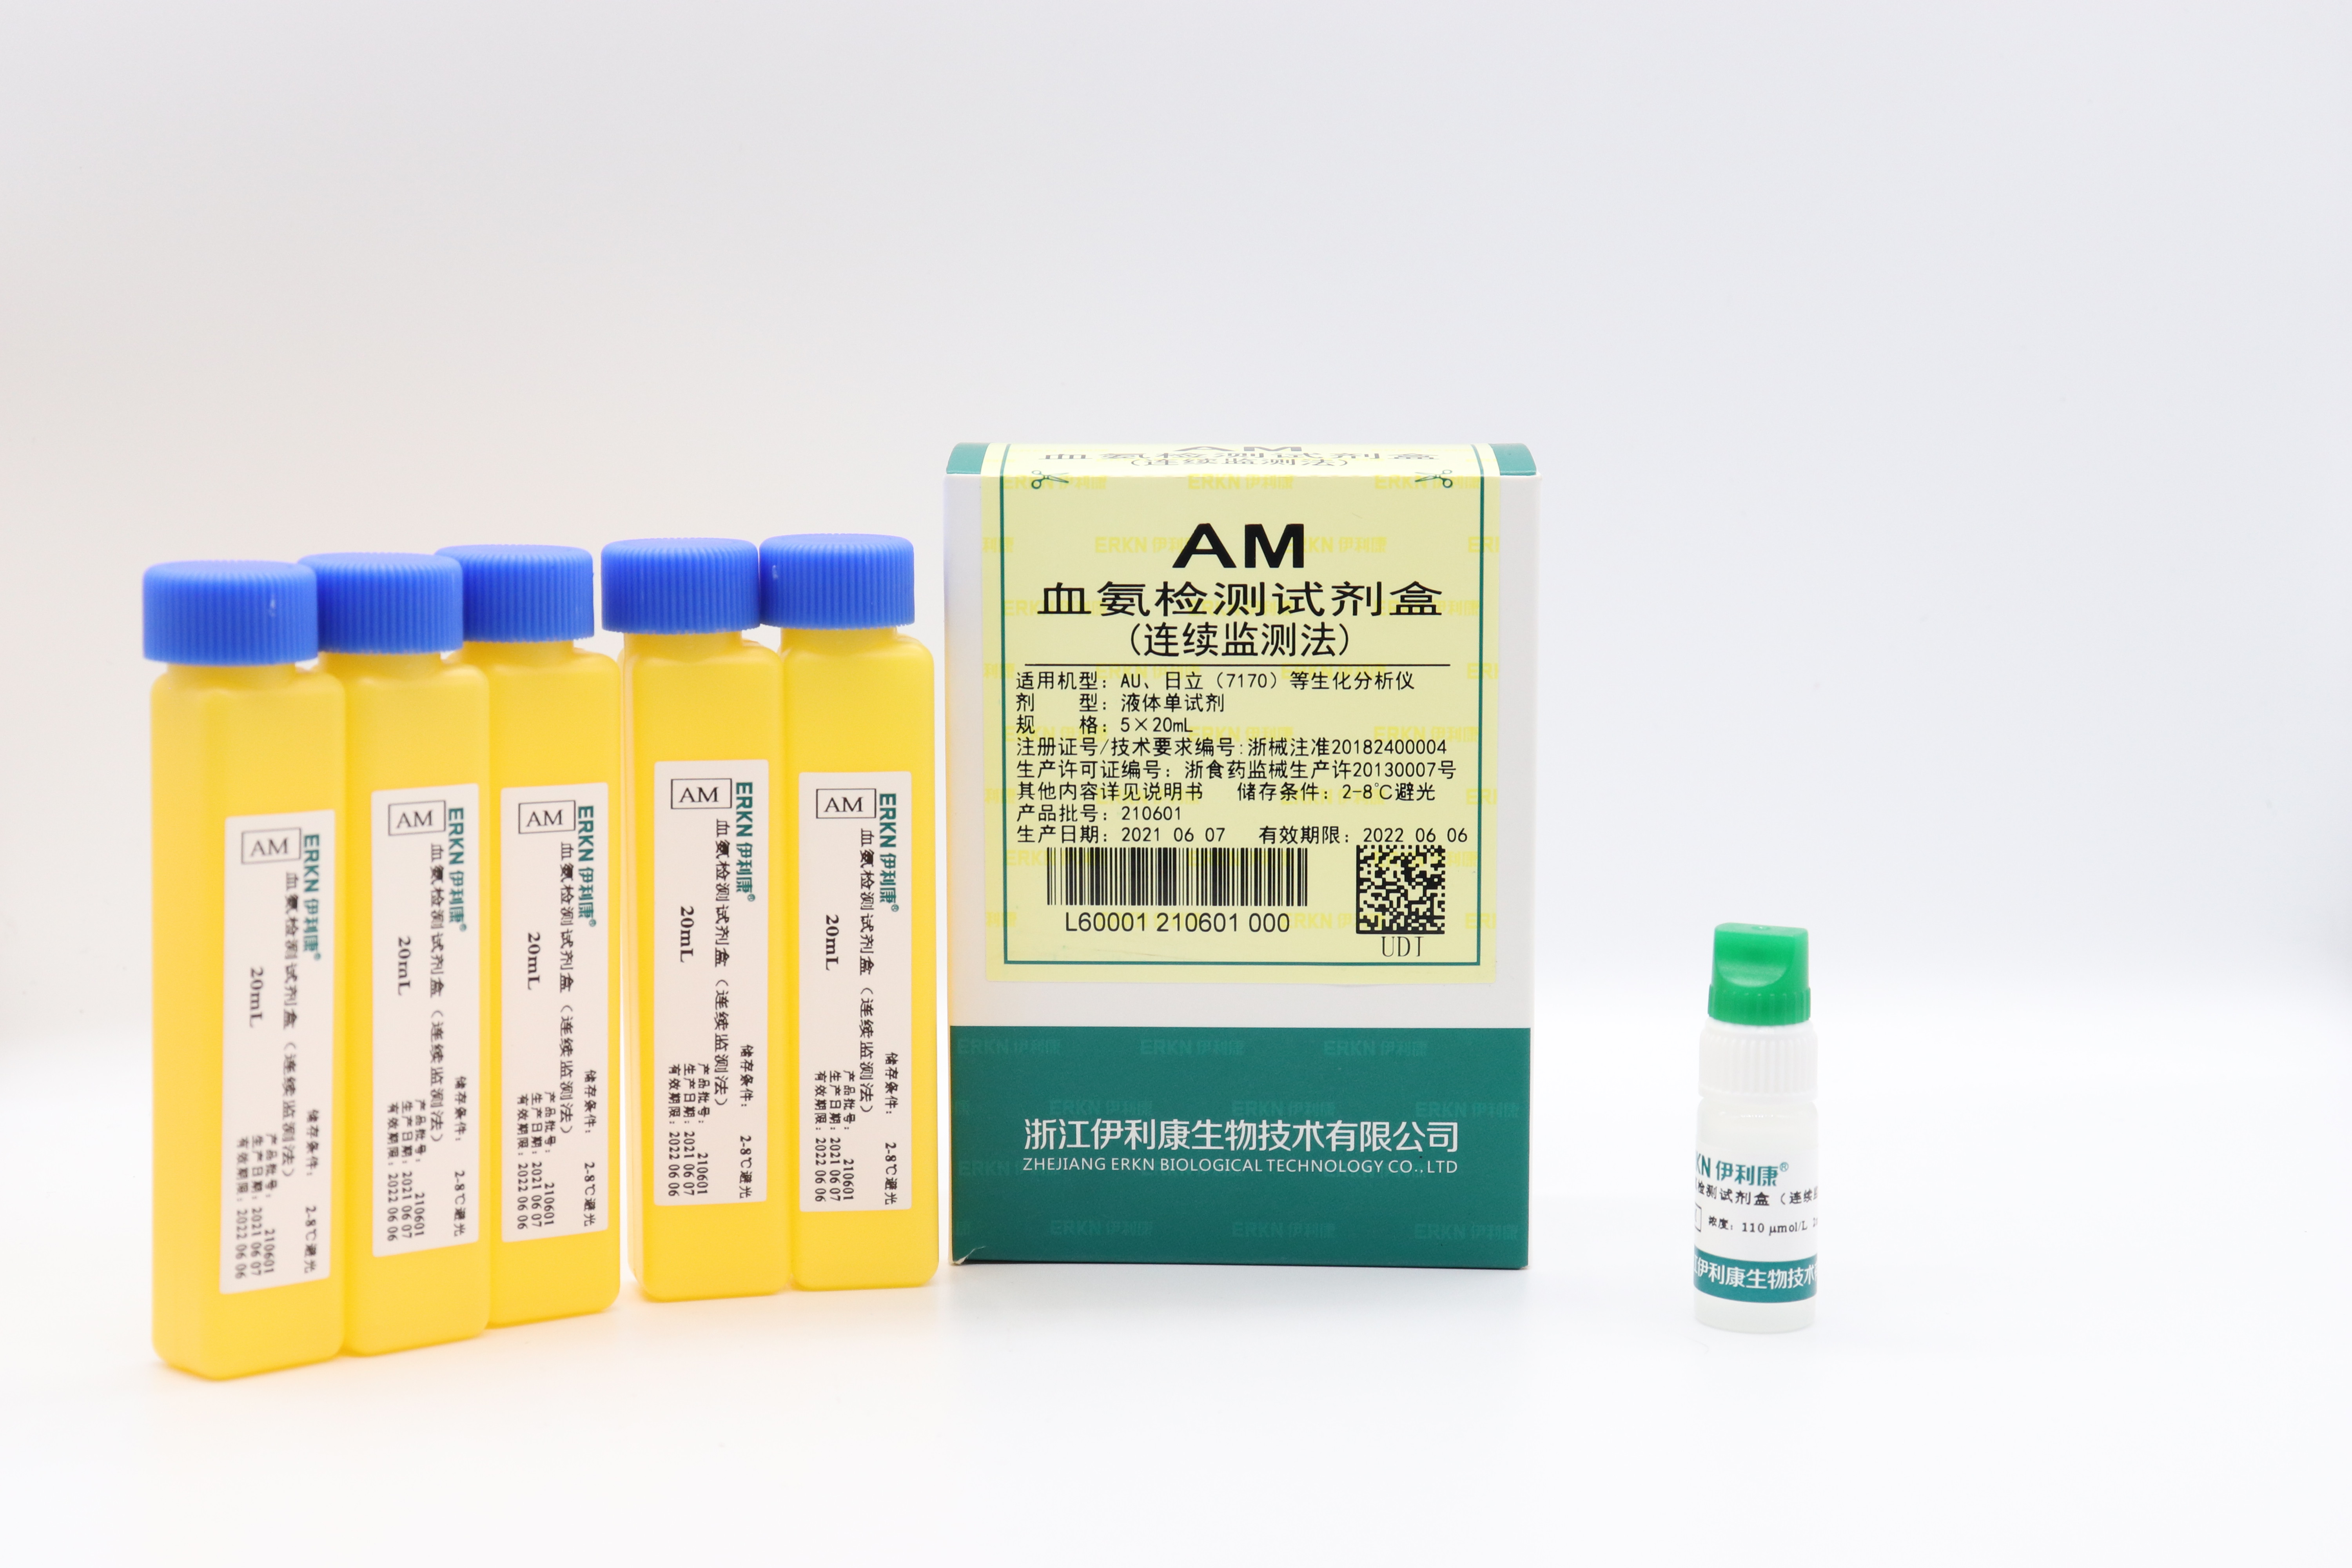 【伊利康】血氨检测试剂盒（连续监测法）-云医购